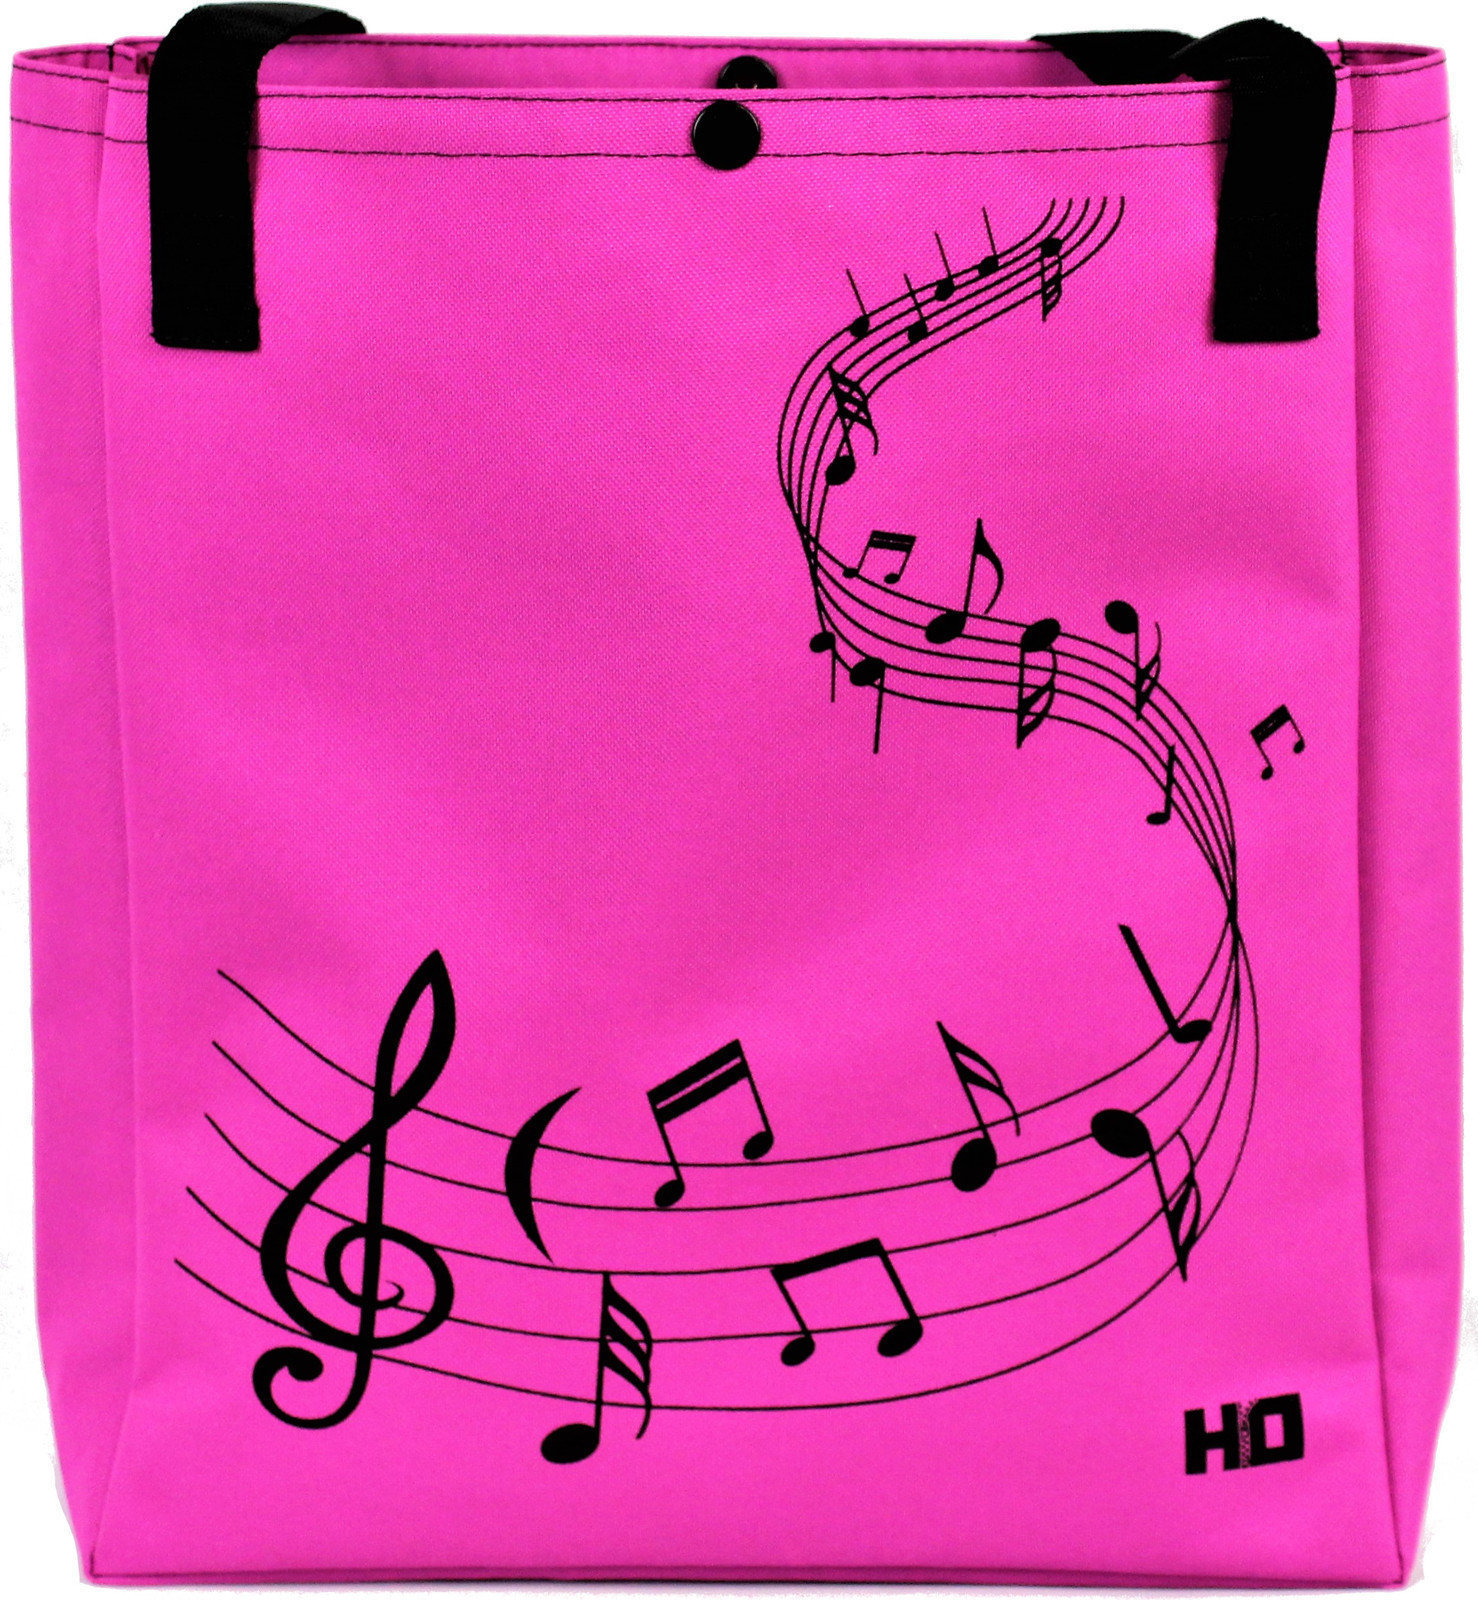 Plastic tas Hudební Obaly H-O TNKLL122 Melody Zwart-Pink